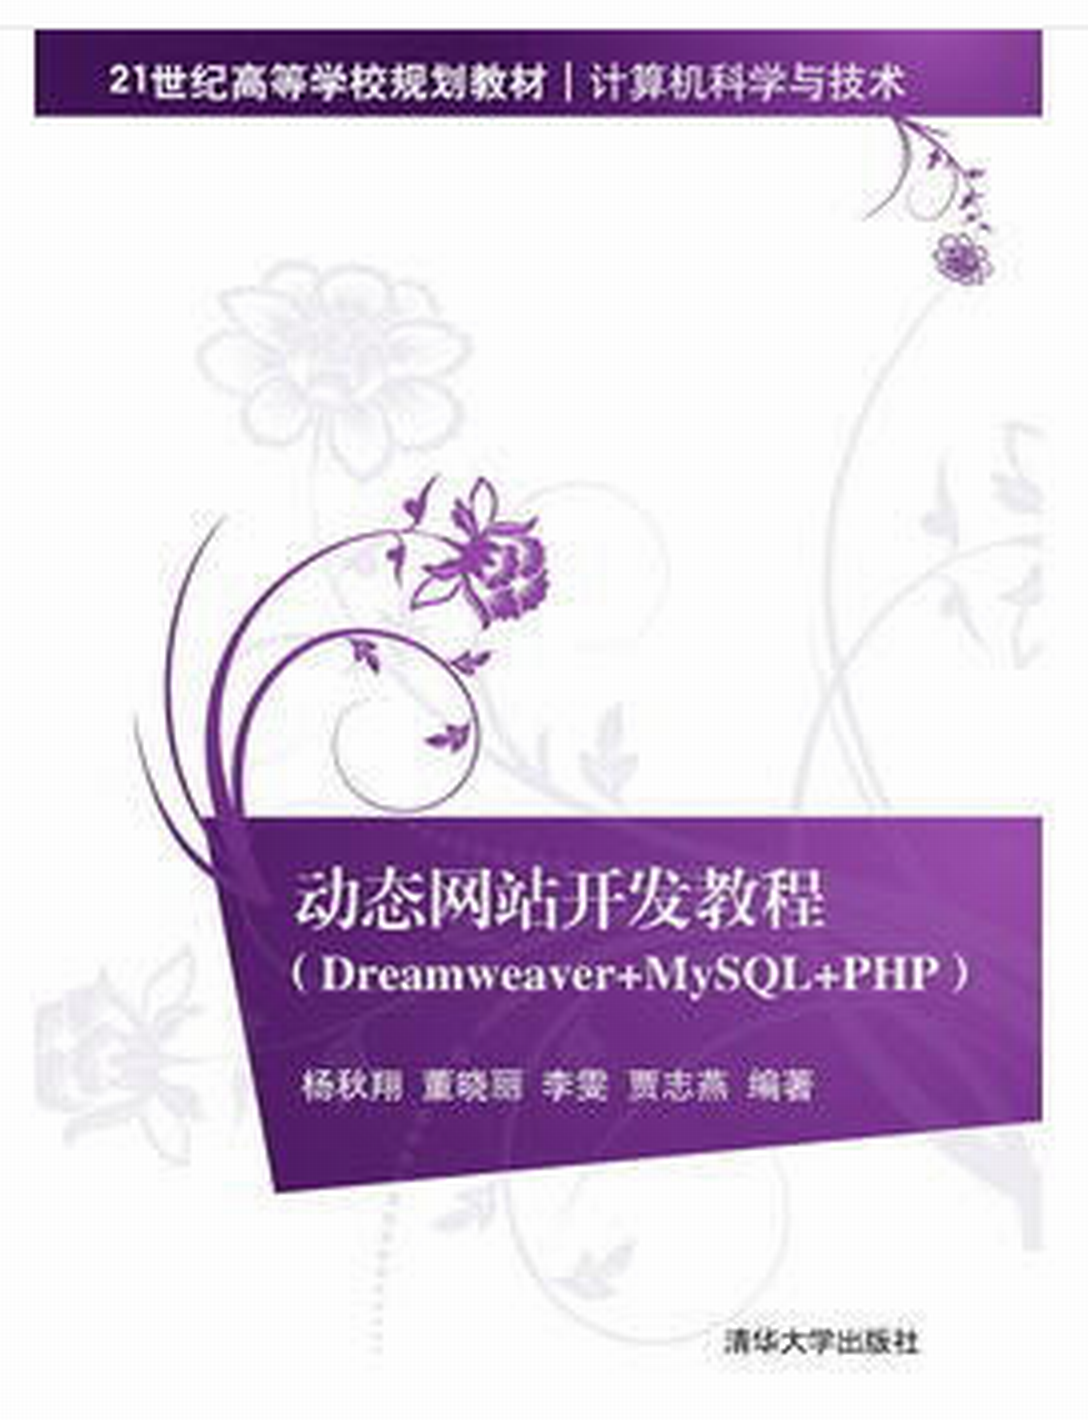 動態網站開發教程(Dreamweaver+MySQL+PHP)